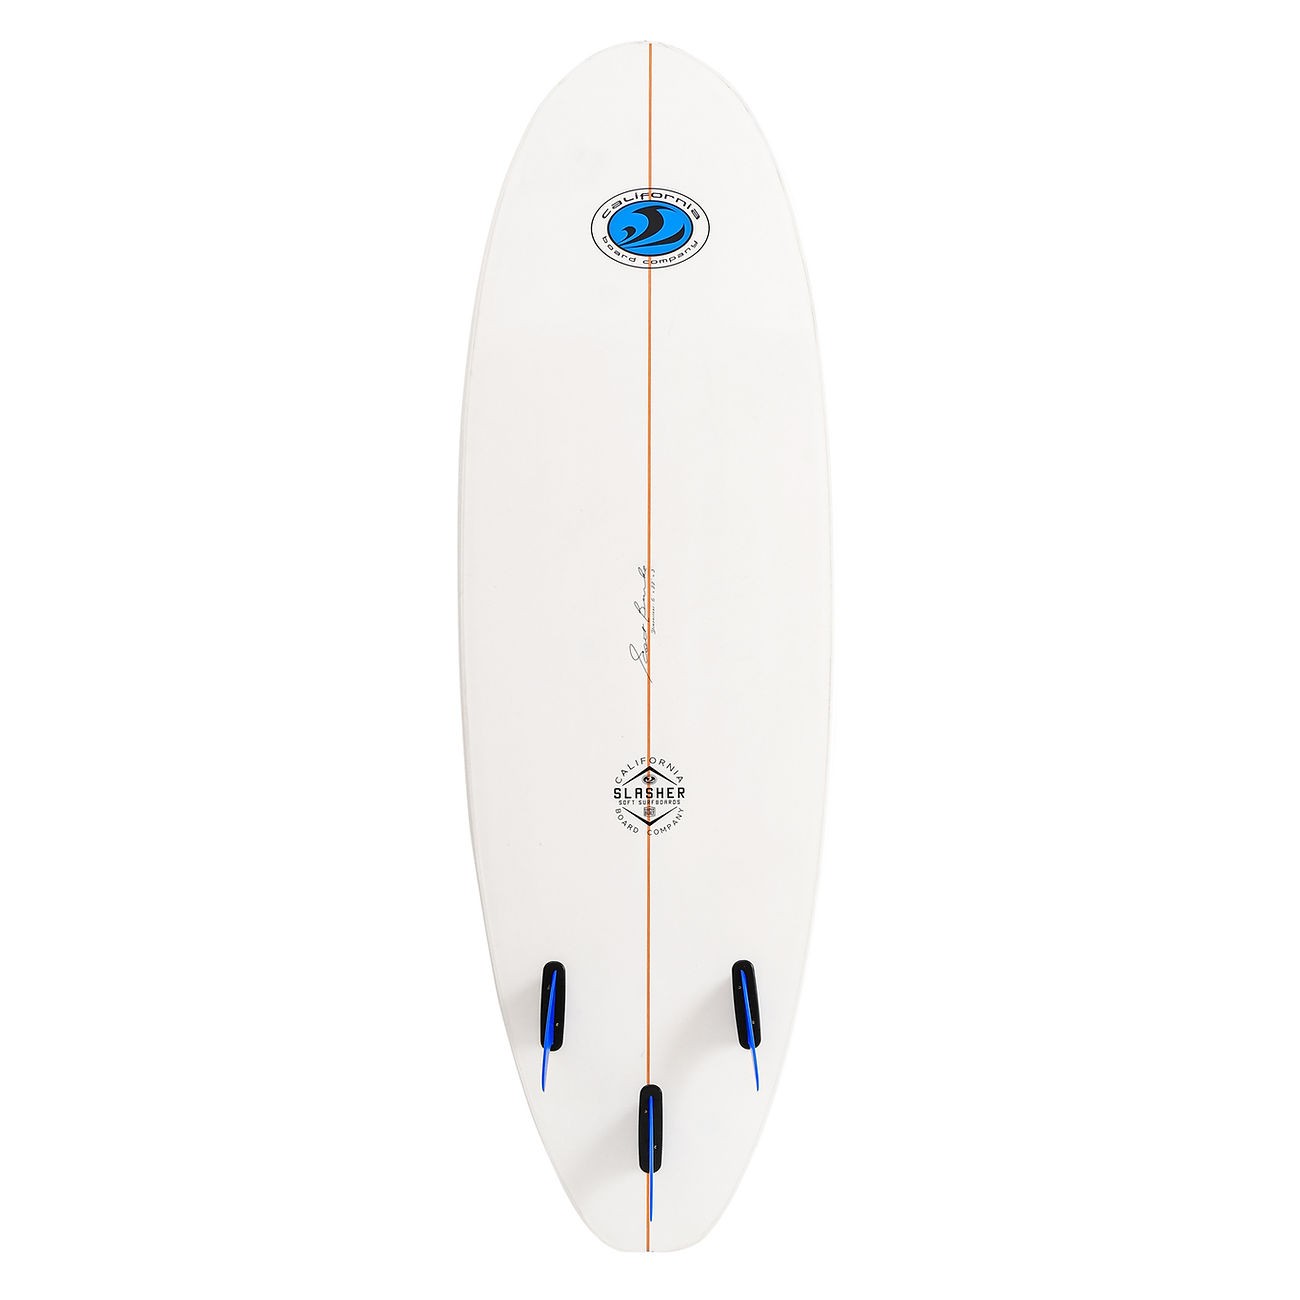 CBC - Planche de Surf en mousse - Softboard Slasher 6'0 - White